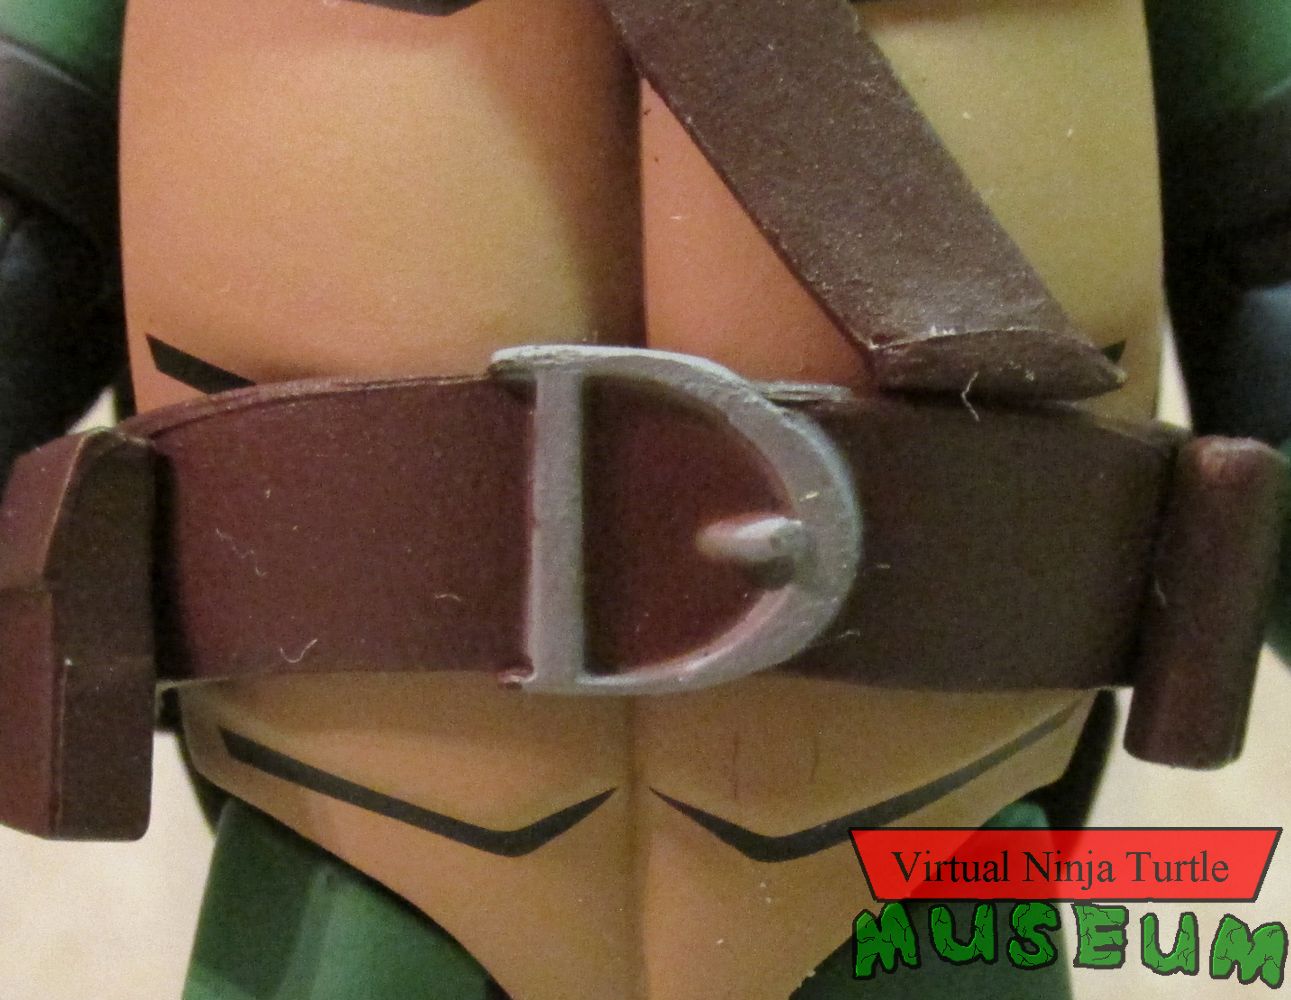 Donatello's belt